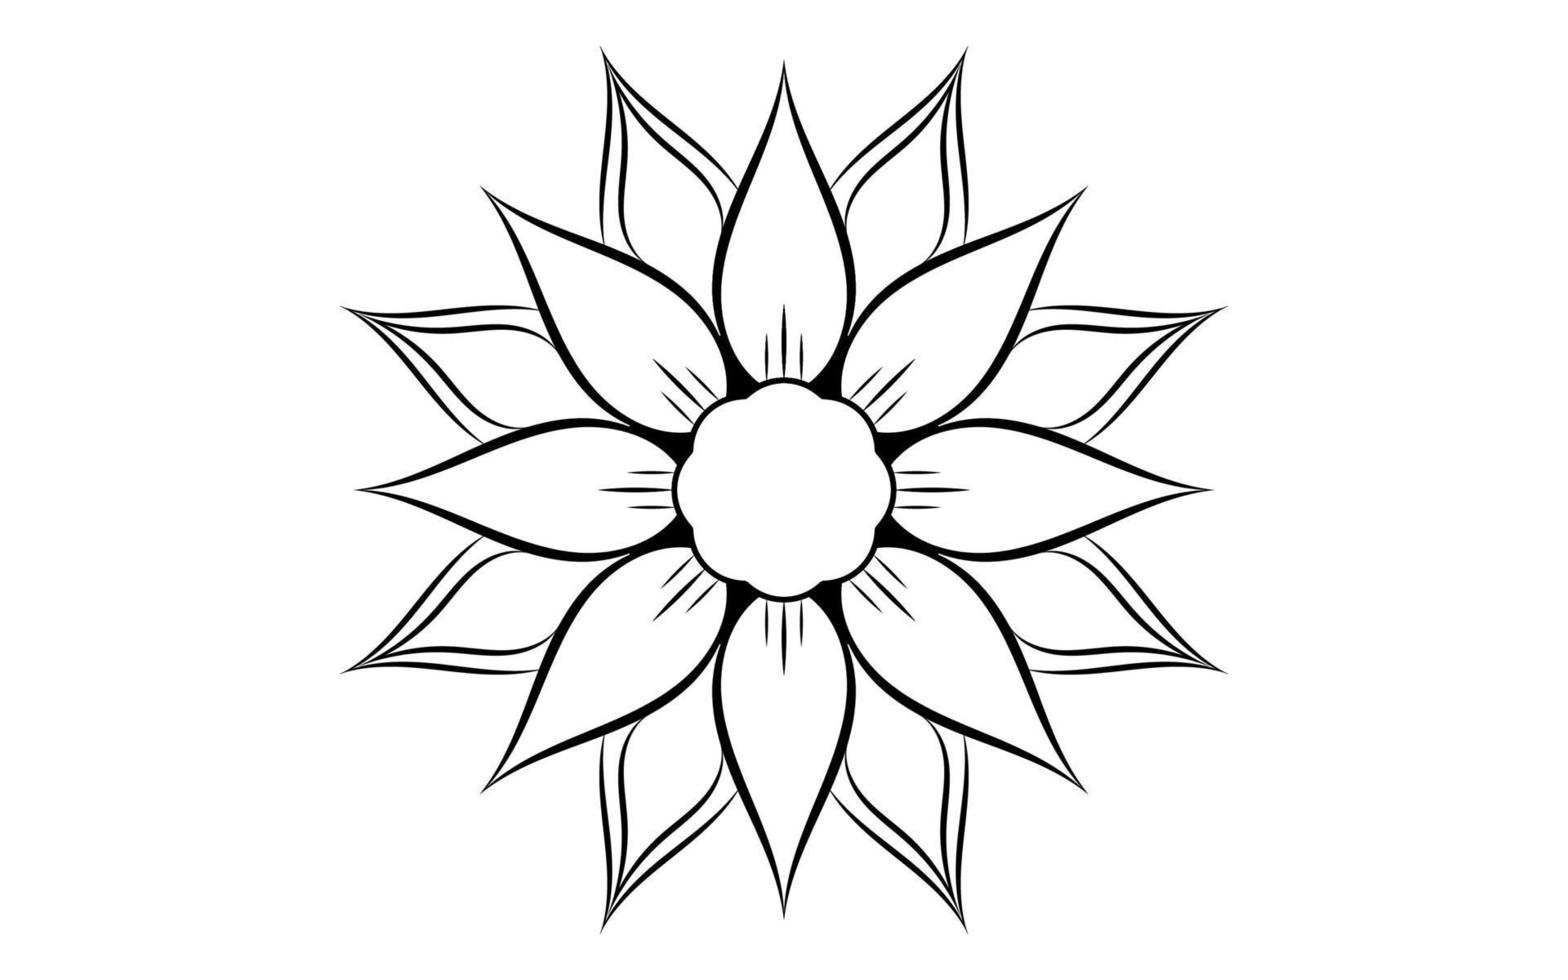 bloem pictogram vector geïsoleerd op een witte achtergrond, hand getrokken bloem pictogram illustratie, bloemen pictogram logo sjabloon, symbool natuurlijke pictogram